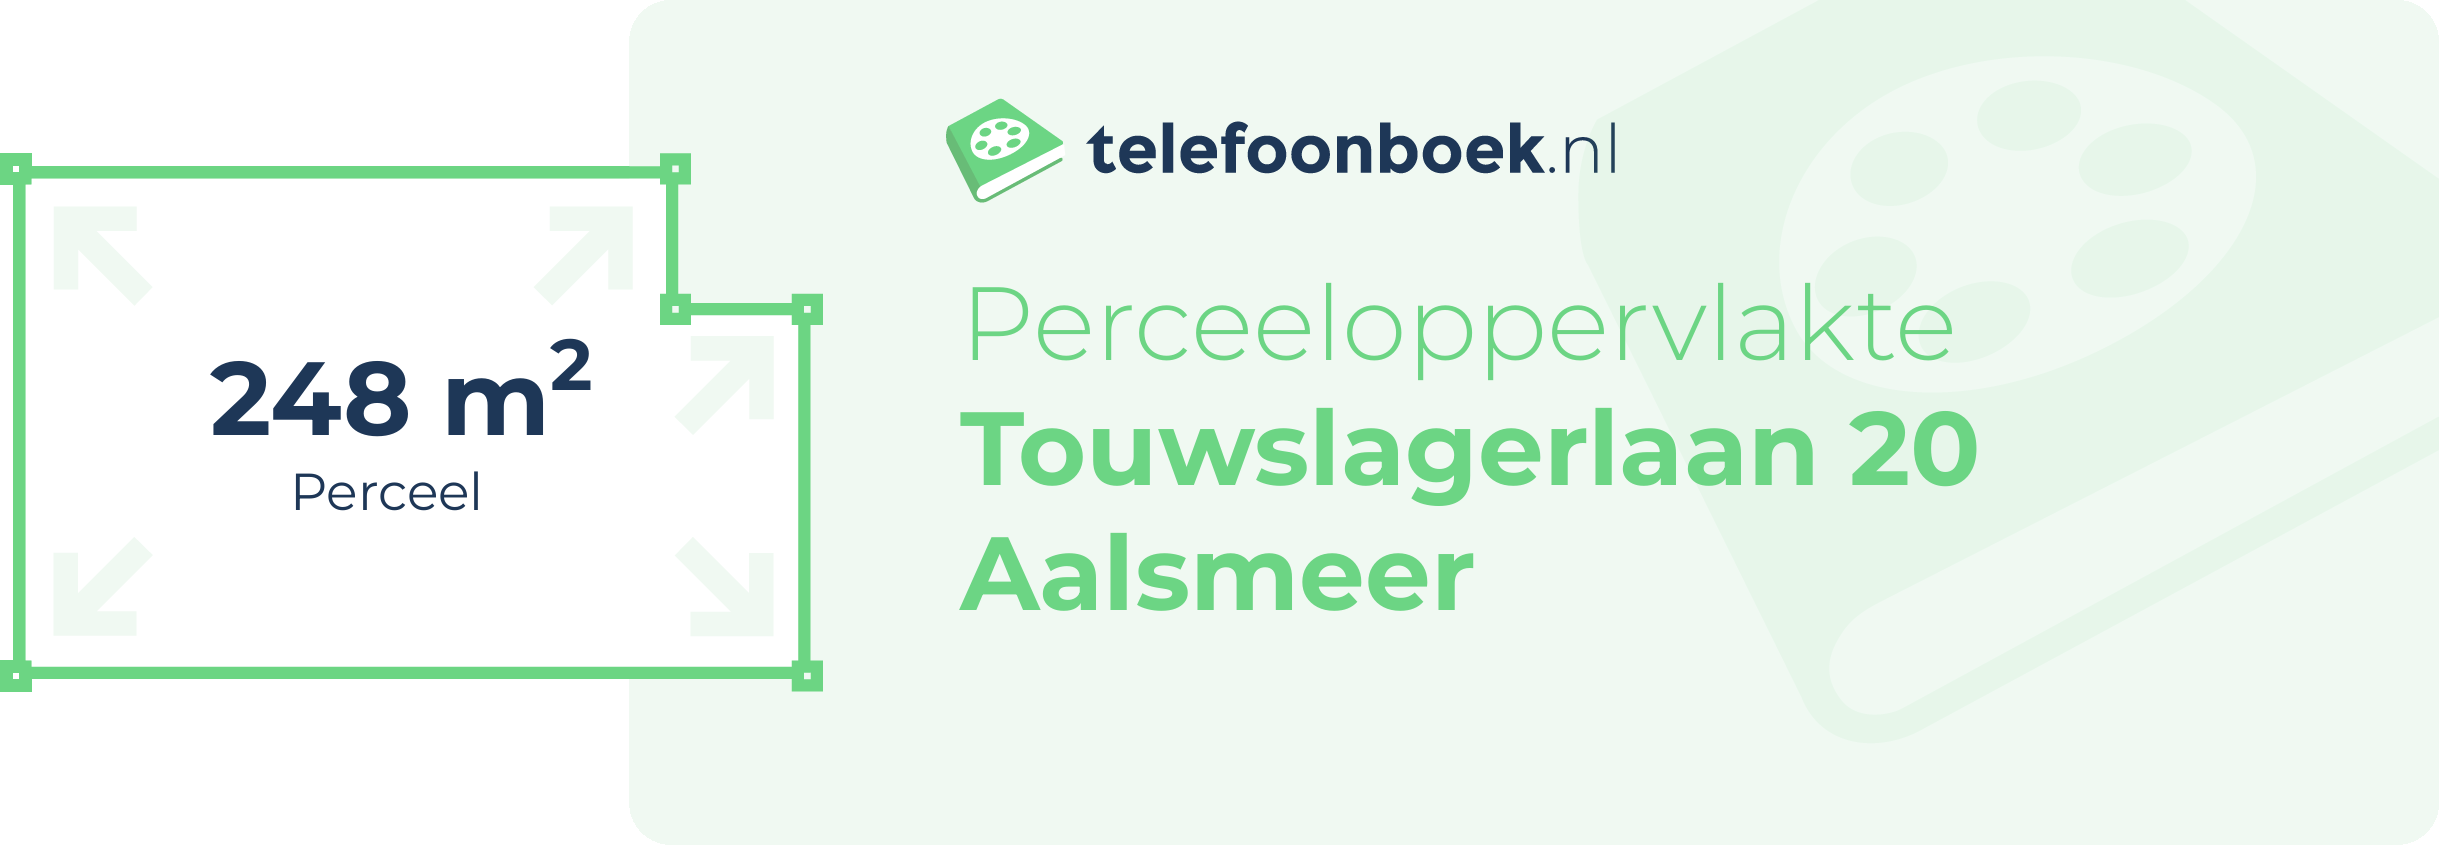 Perceeloppervlakte Touwslagerlaan 20 Aalsmeer